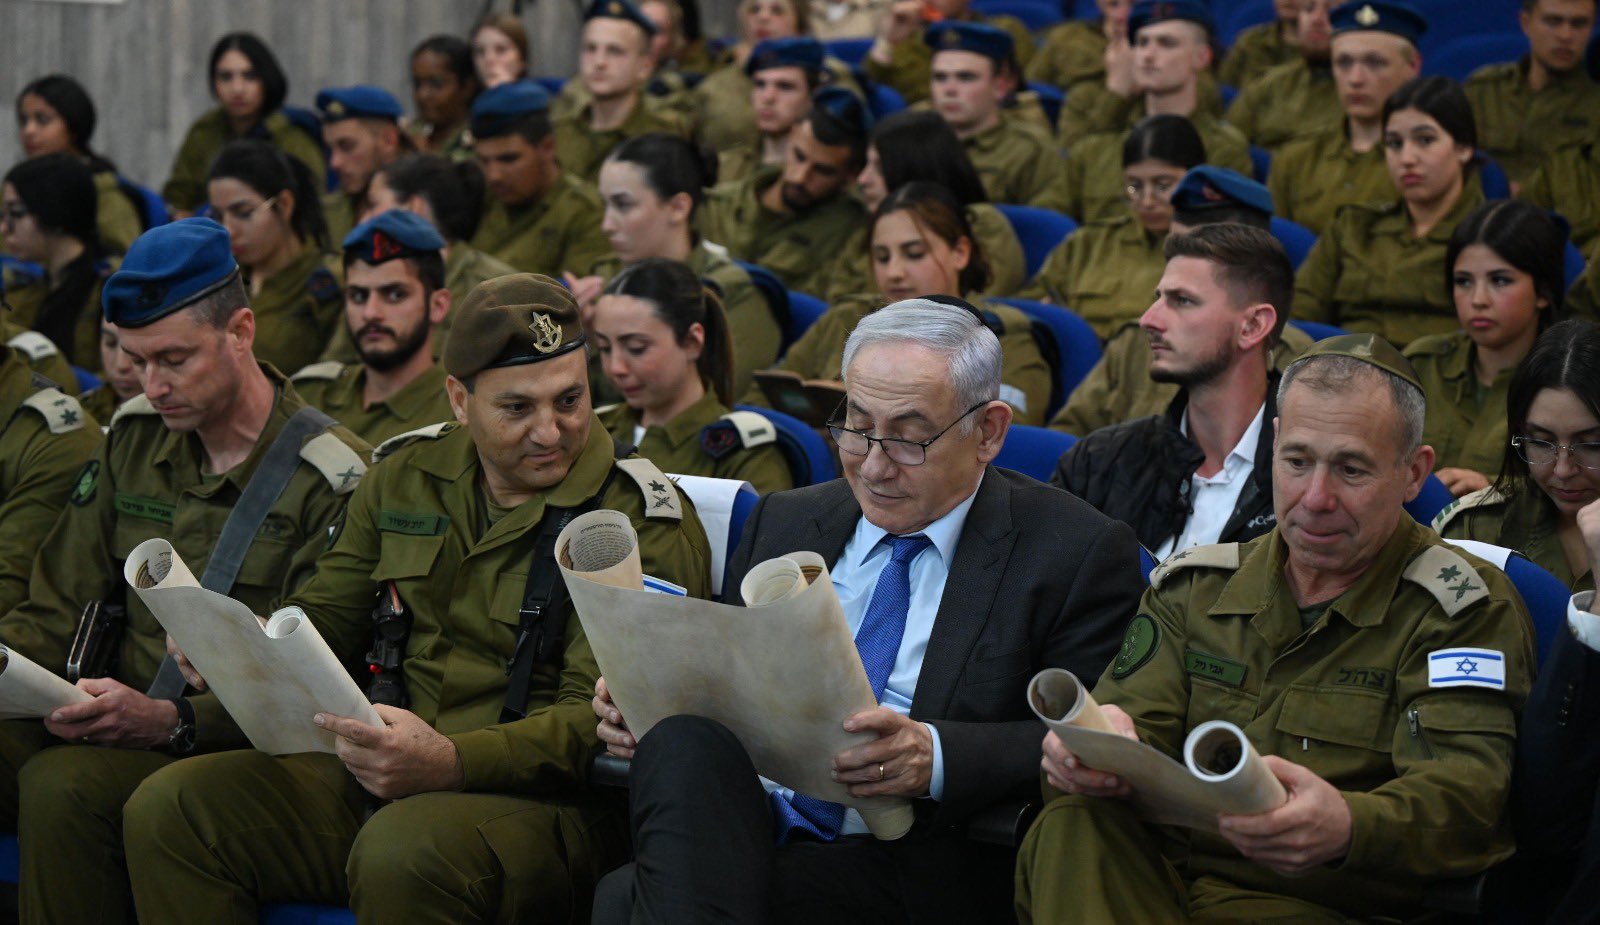 Netanyahu enfrenta repúdio em Israel após dizer que reféns ‘estão sofrendo, não morrendo’